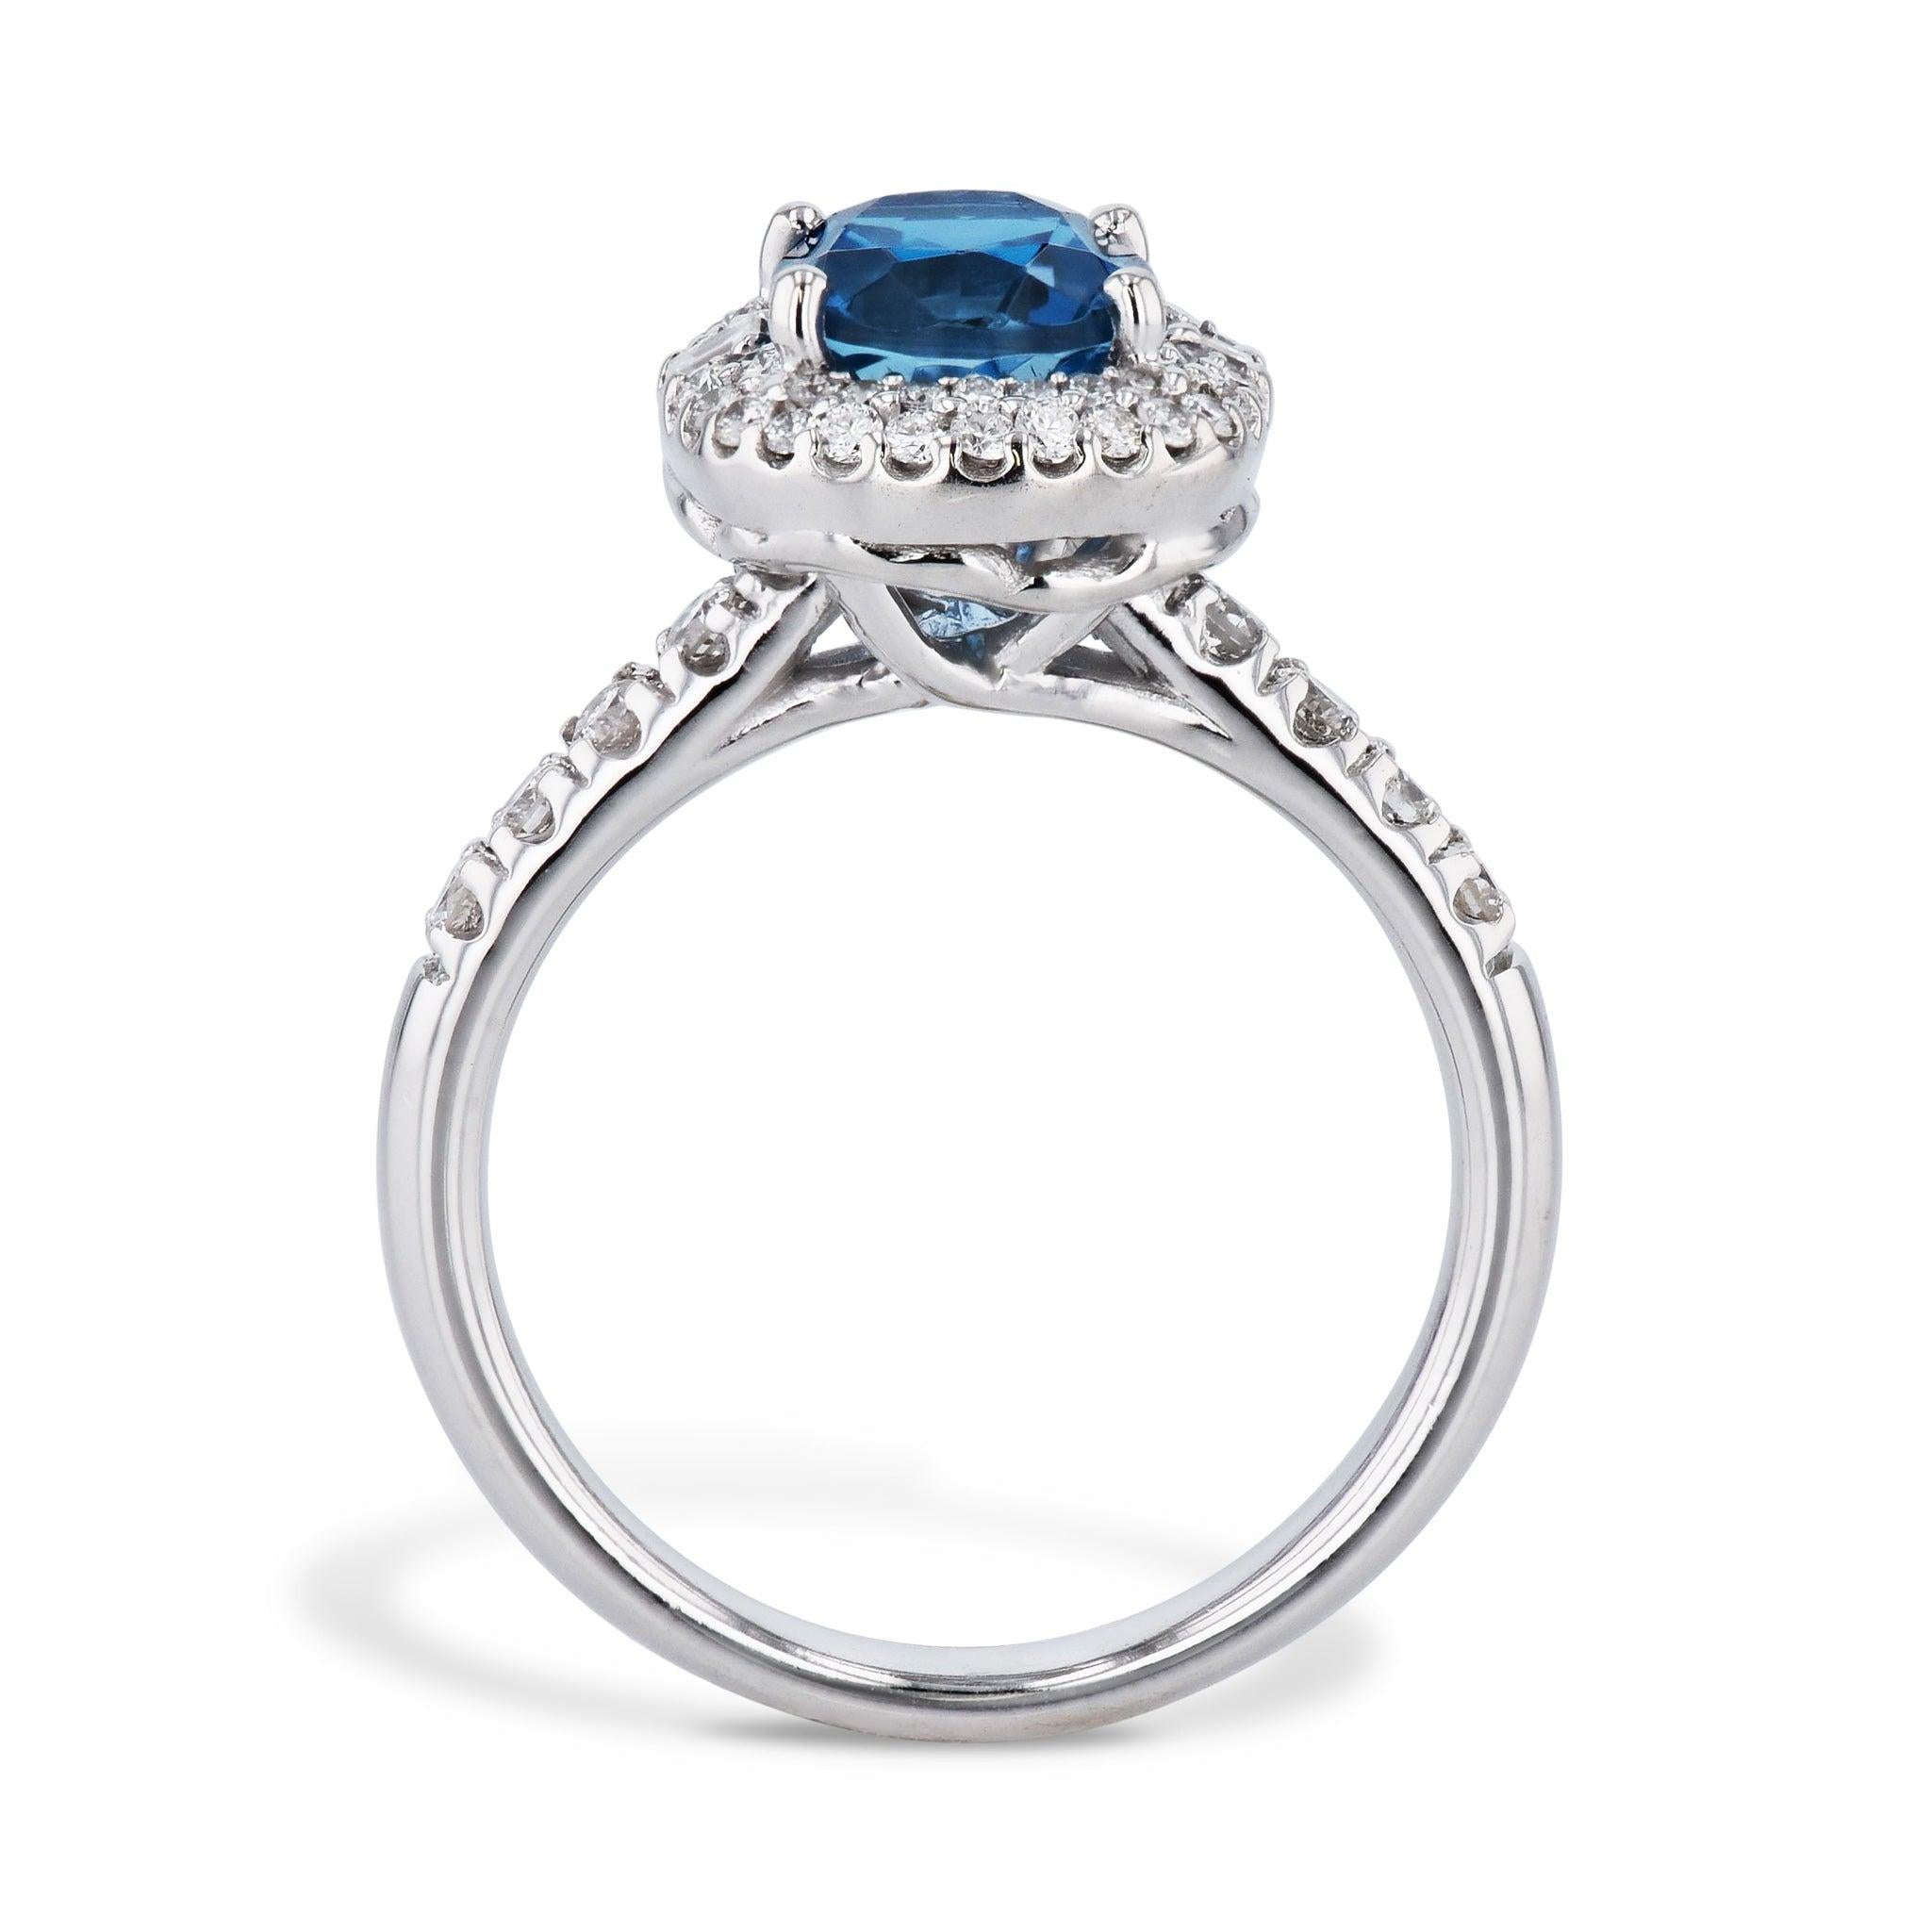 Erhöhen Sie Ihren Look mit dem atemberaubenden London Blue Topaz and Diamond Estate Ring. Dieses klassische Stück ist aus glänzendem 14kt. Er ist aus Weißgold gefertigt und zeigt in der Mitte einen leuchtenden Londoner Blautopas. Ein exquisiter